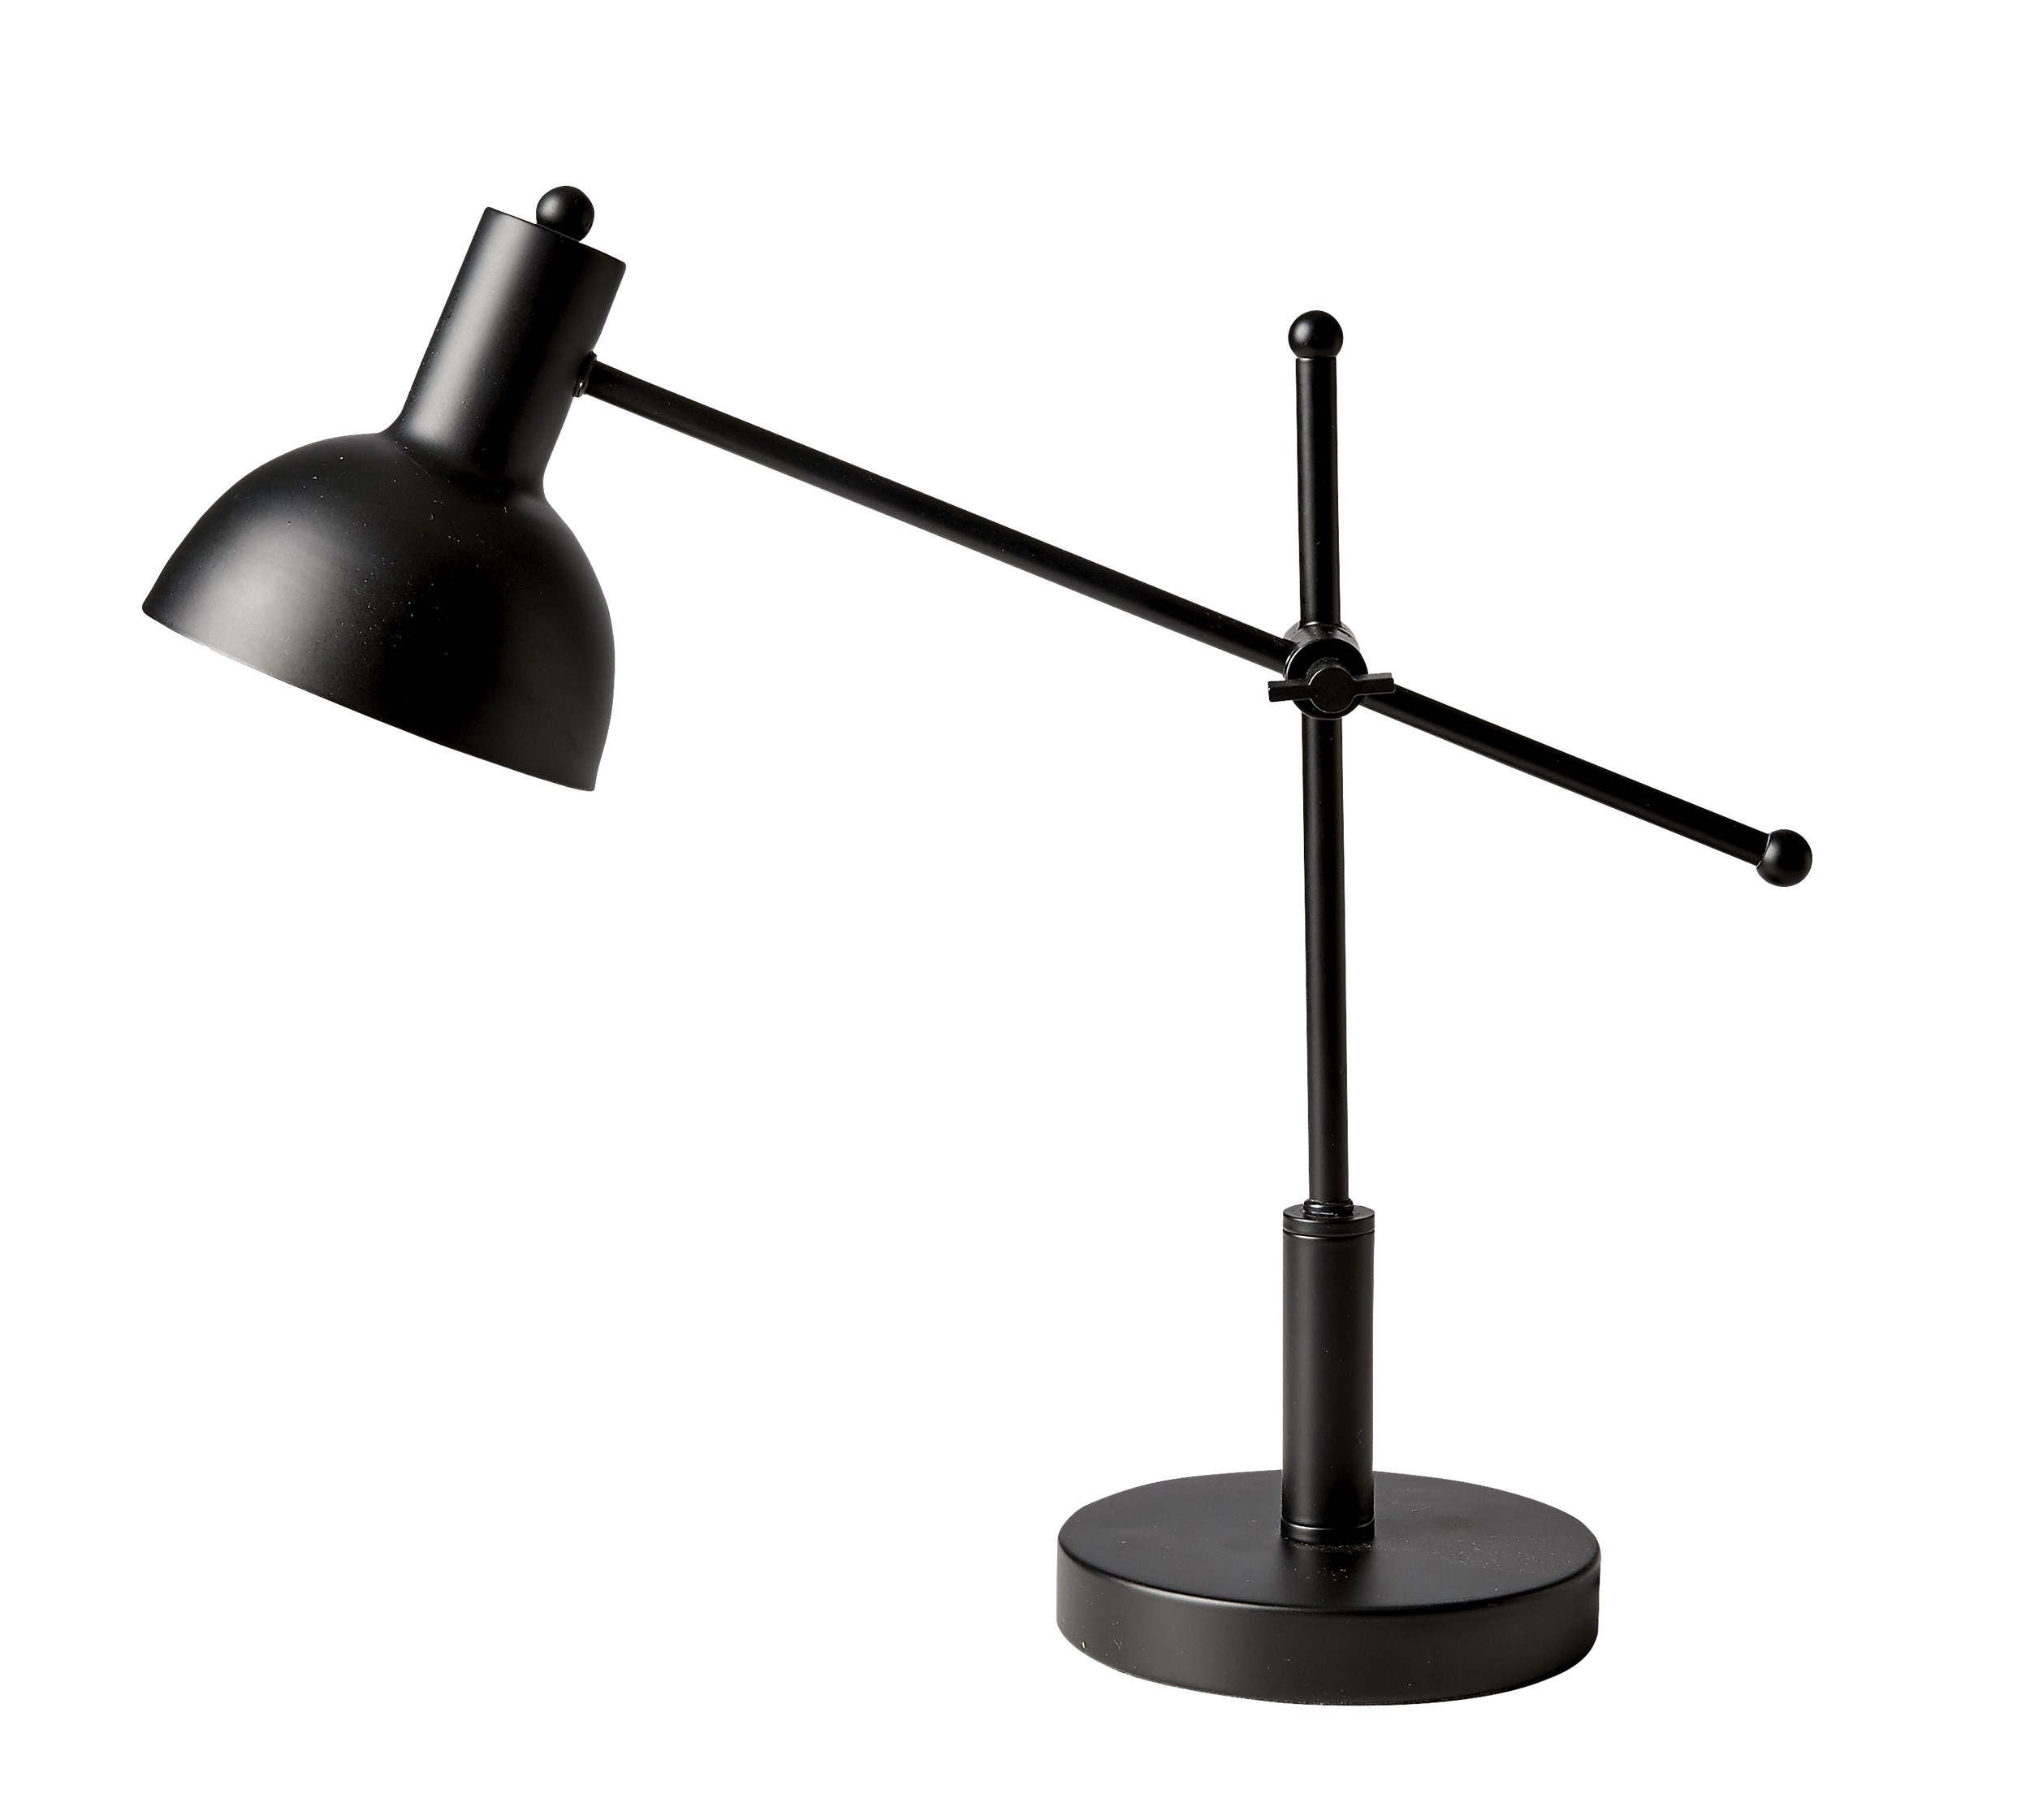 Monti Bordslampa 42 x 14 cm - Mattsvart metallskärm, matt metallbas i svart och svart sladd